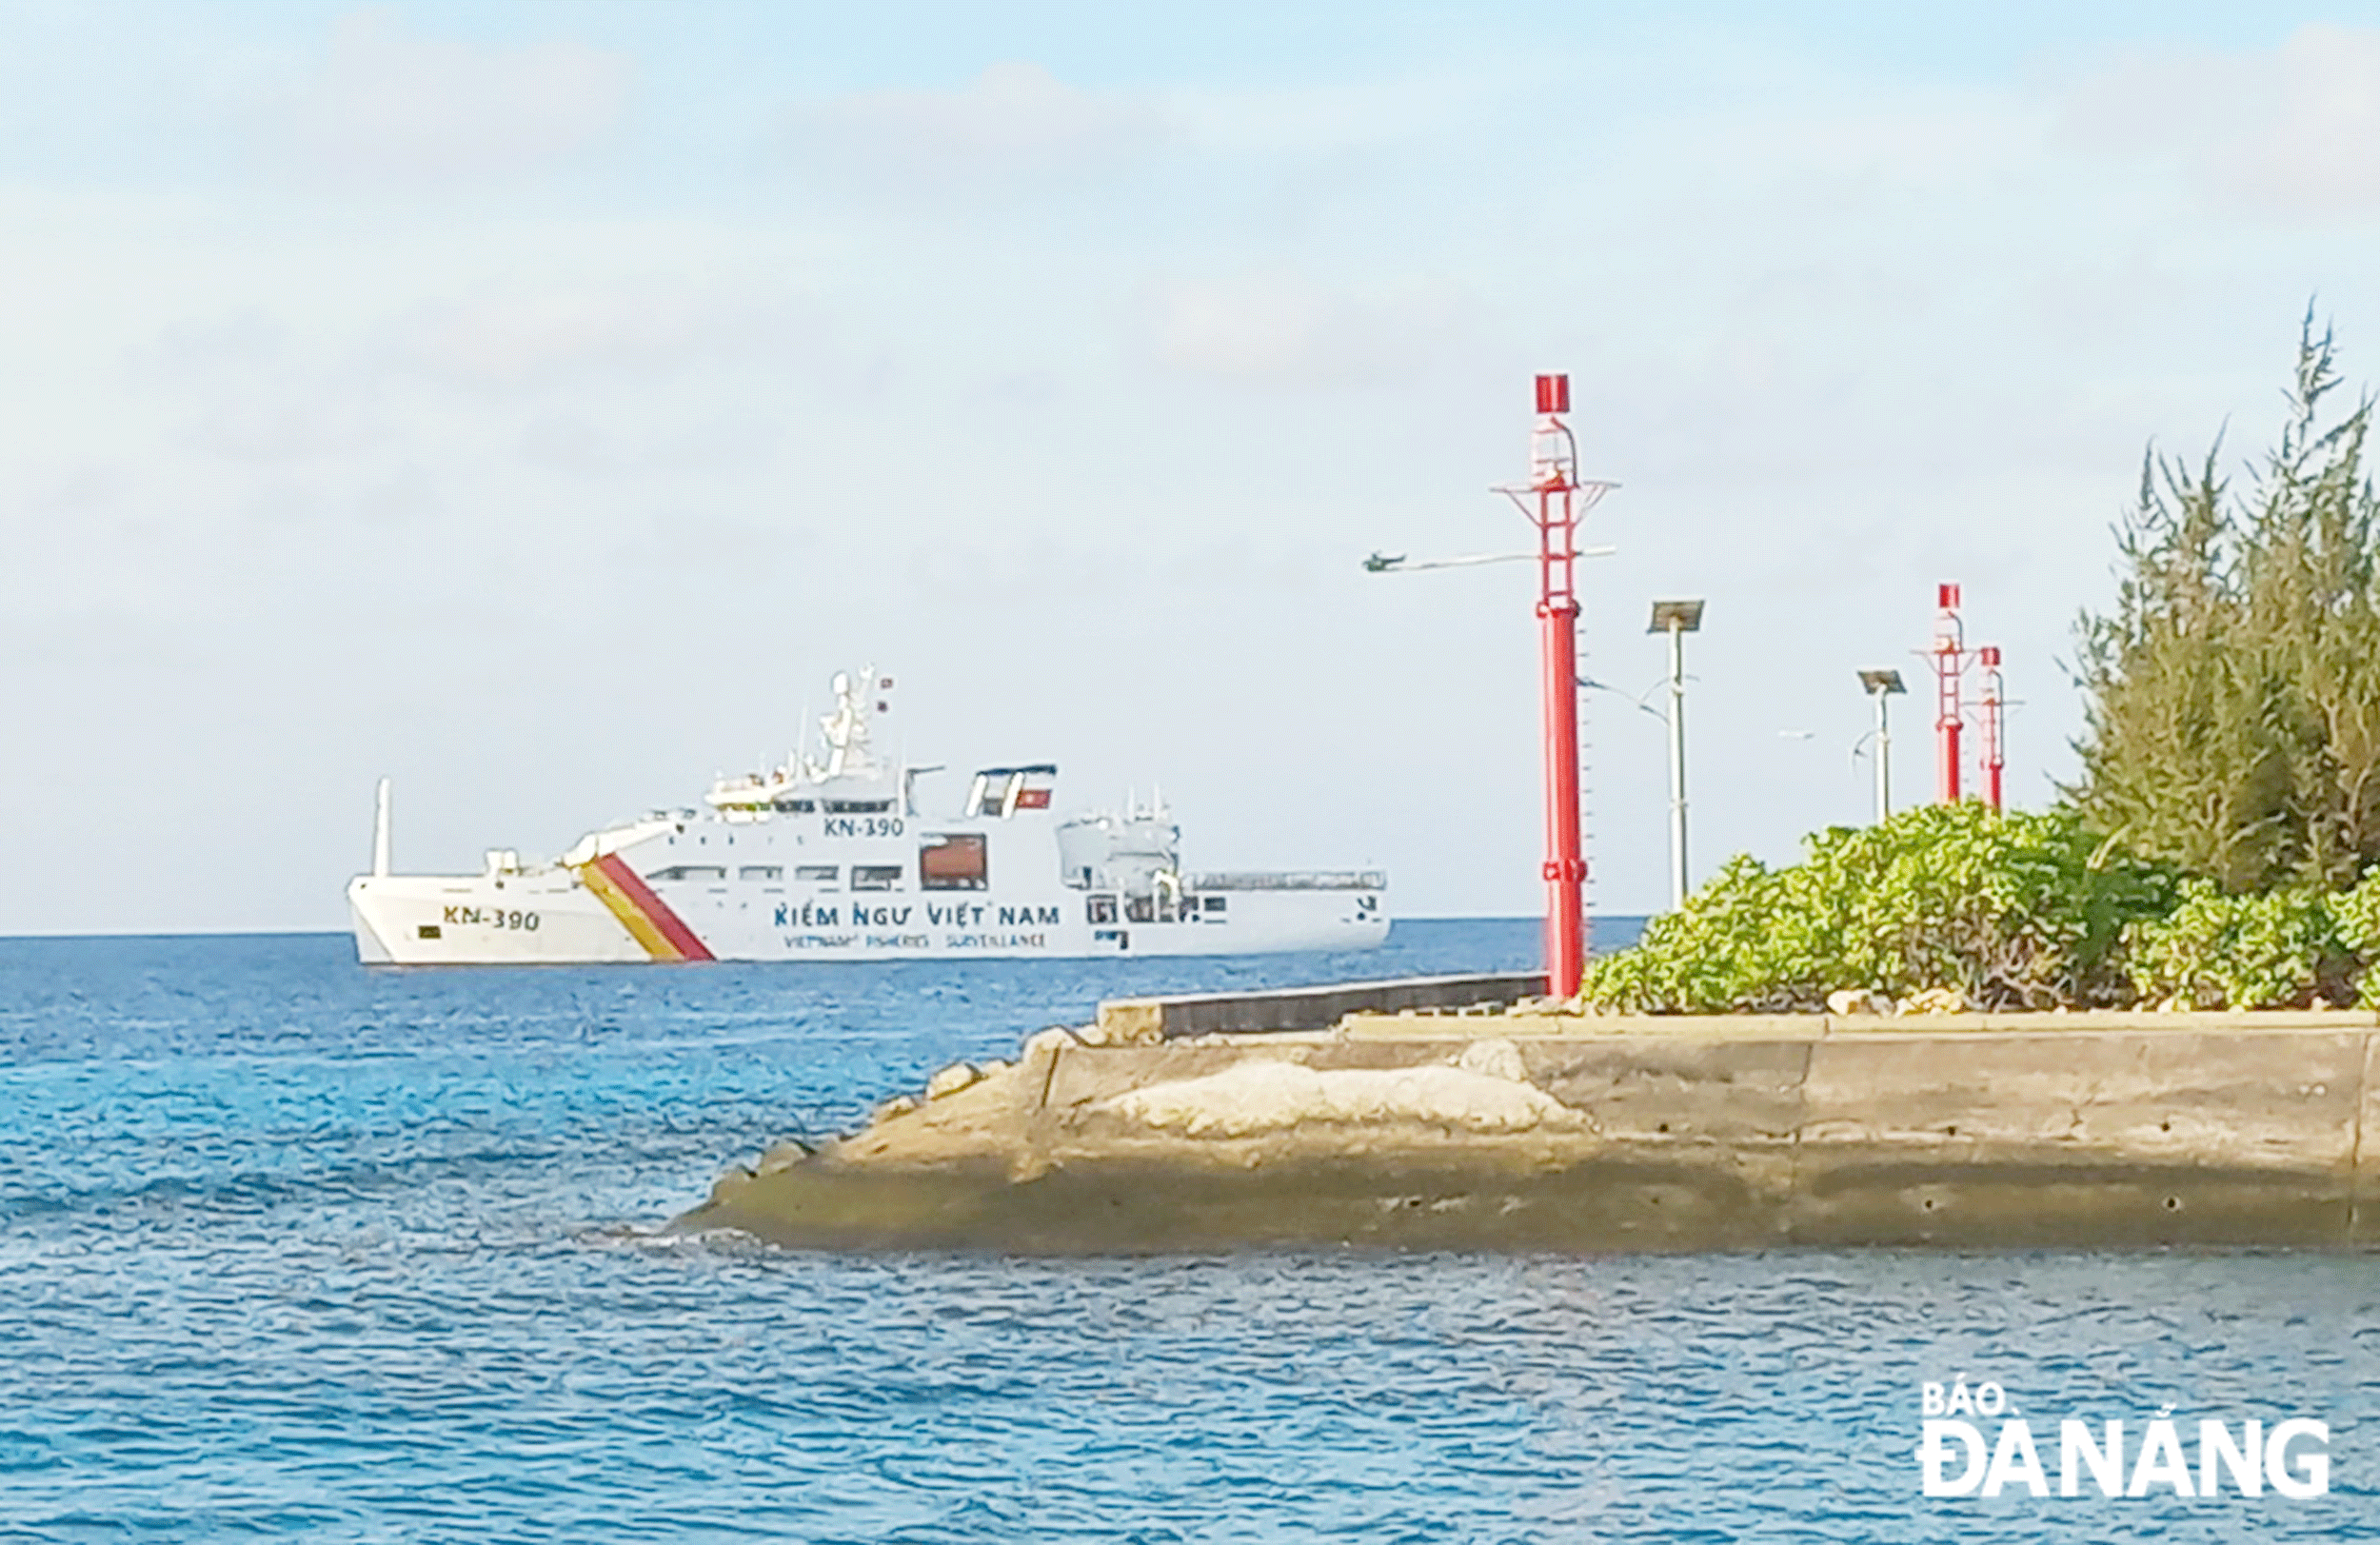 Tàu KN 390 khởi hành từ Quân cảng Vùng 3 Hải quân đưa đoàn công tác số 5-2024 neo đậu bên ngoài đảo Song Tử Tây, quần đảo Trường Sa.  Ảnh: TRIỆU TÙNG